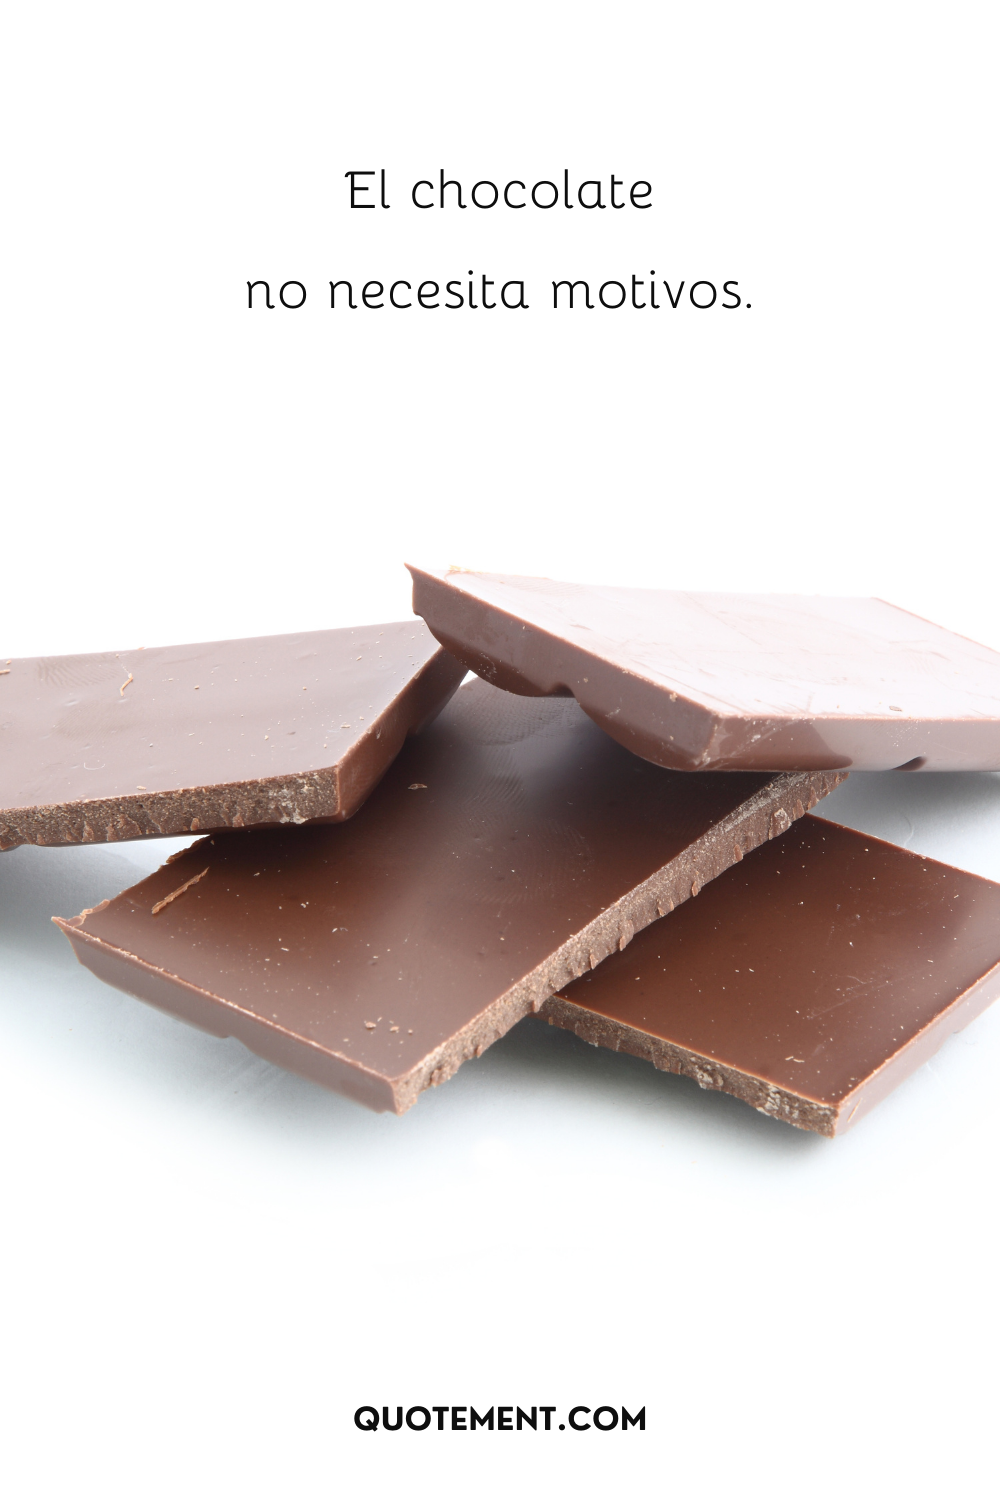 El chocolate no necesita motivos.